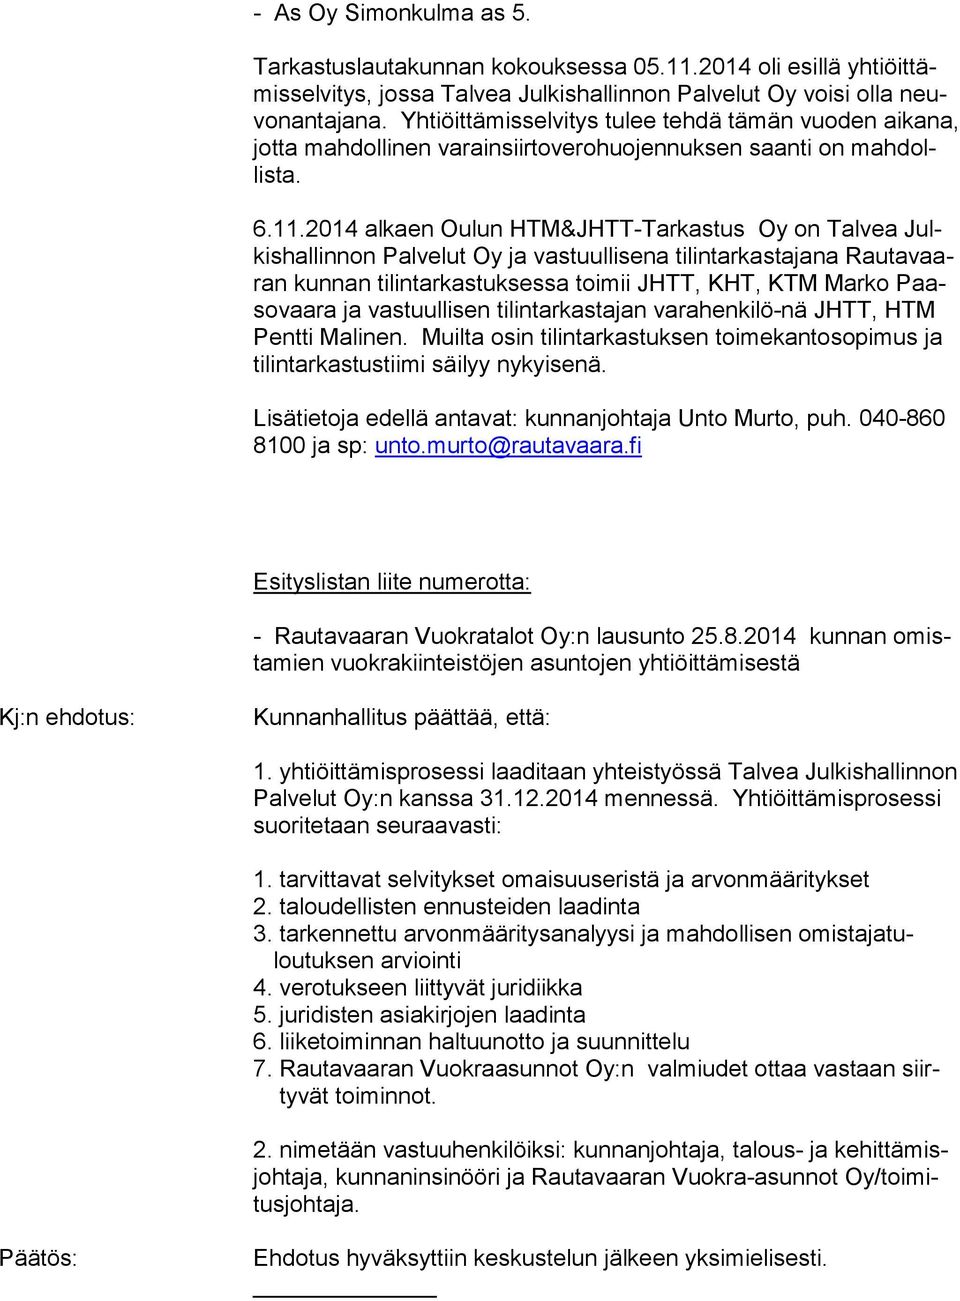 2014 alkaen Oulun HTM&JHTT-Tarkastus Oy on Talvea Julkishallinnon Palvelut Oy ja vastuullisena tilintarkastajana Rautavaaran kunnan tilintarkastuksessa toimii JHTT, KHT, KTM Marko Paasovaara ja